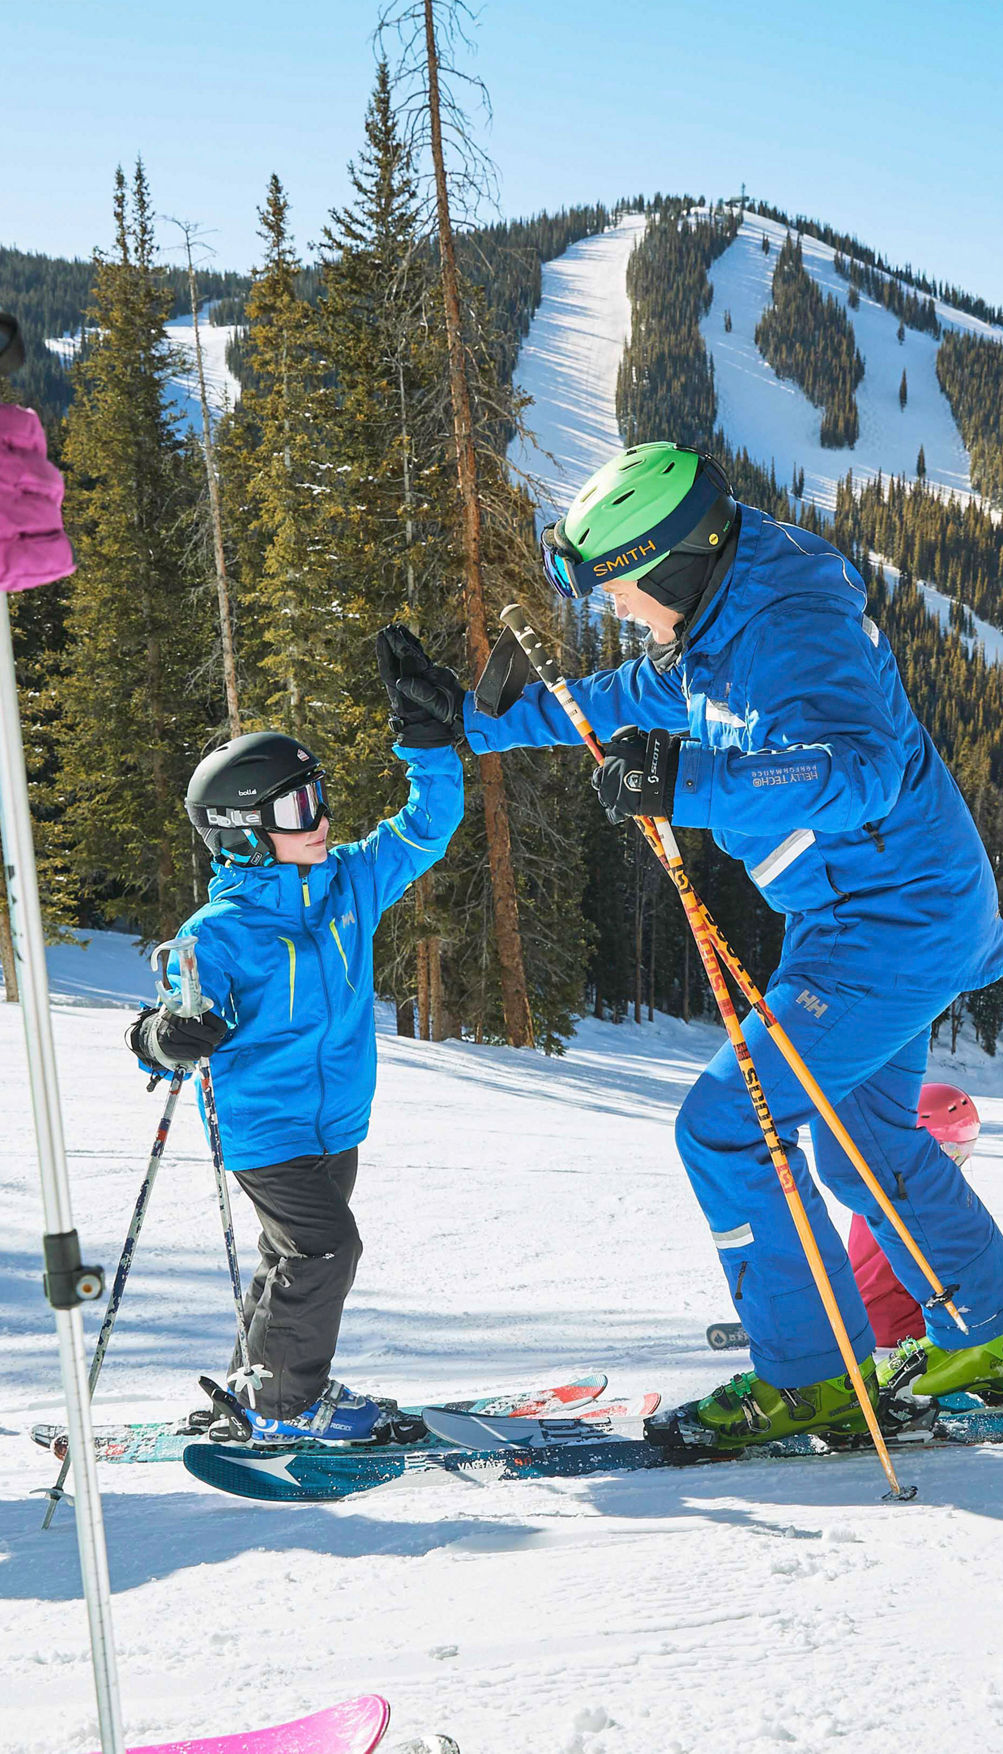 Sticker Ski, winter season - ski equipments on ski run